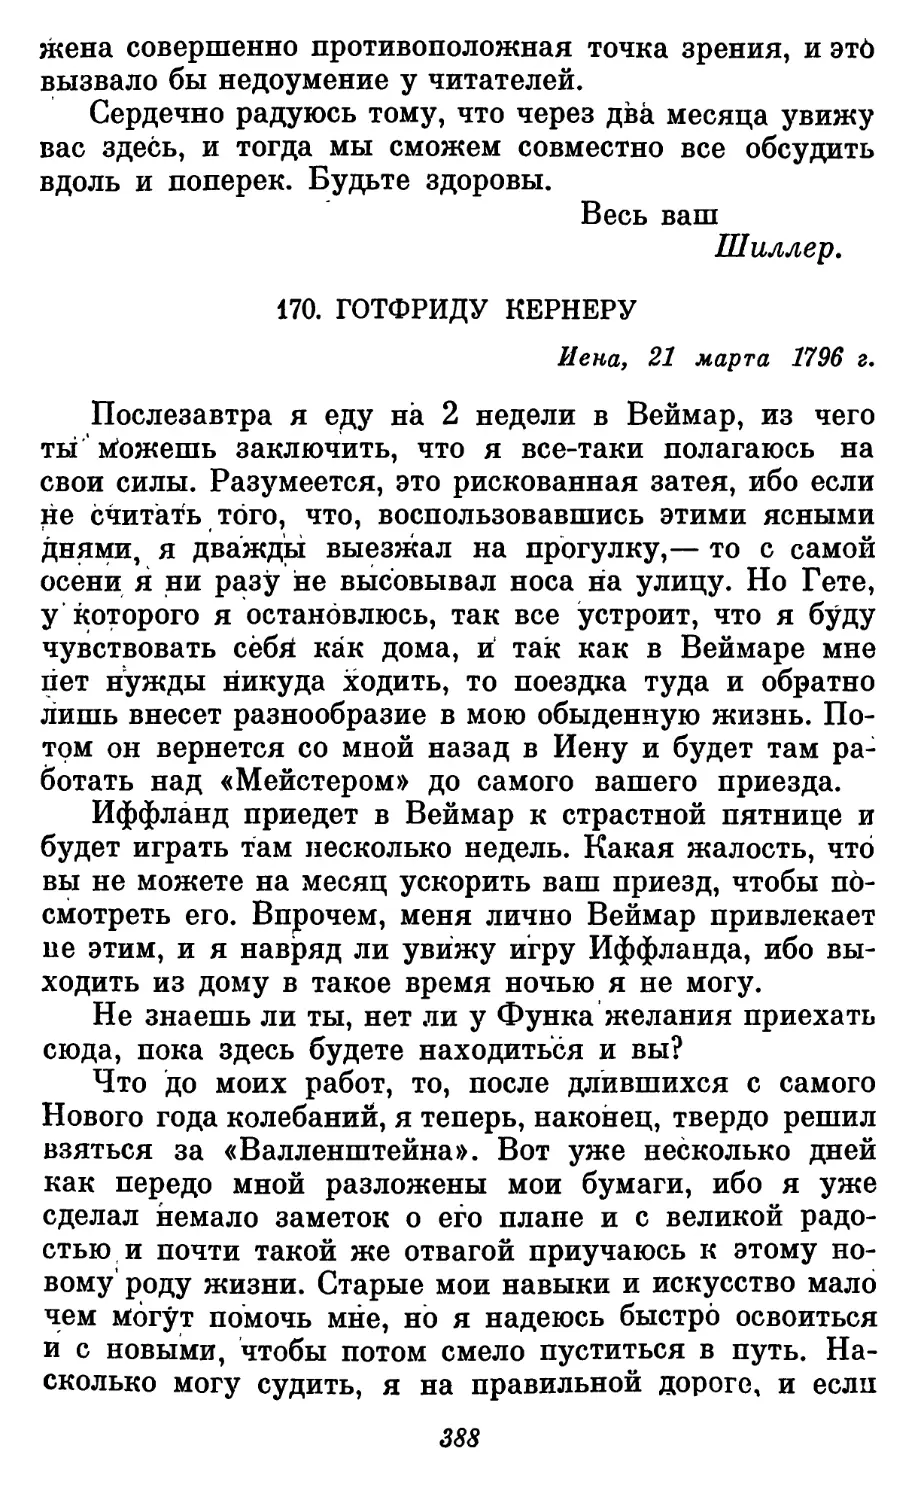 170. Готфриду Кернеру, 21 марта 1796 г